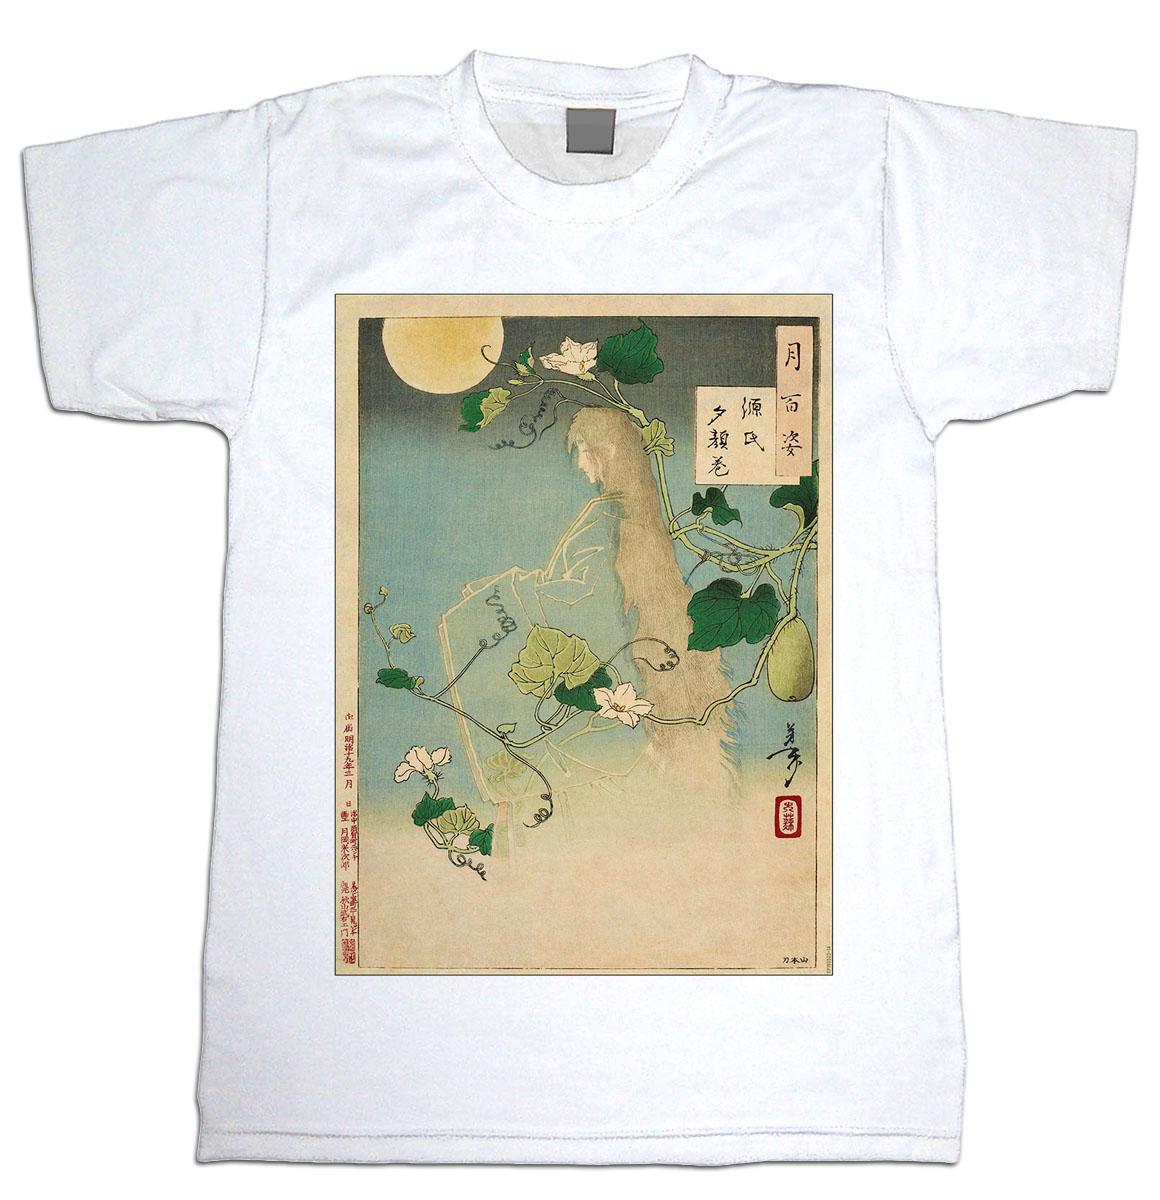 Japanese Ghost Girl Print : Art Print £7.99 / Framed Print £22.99 / T ...